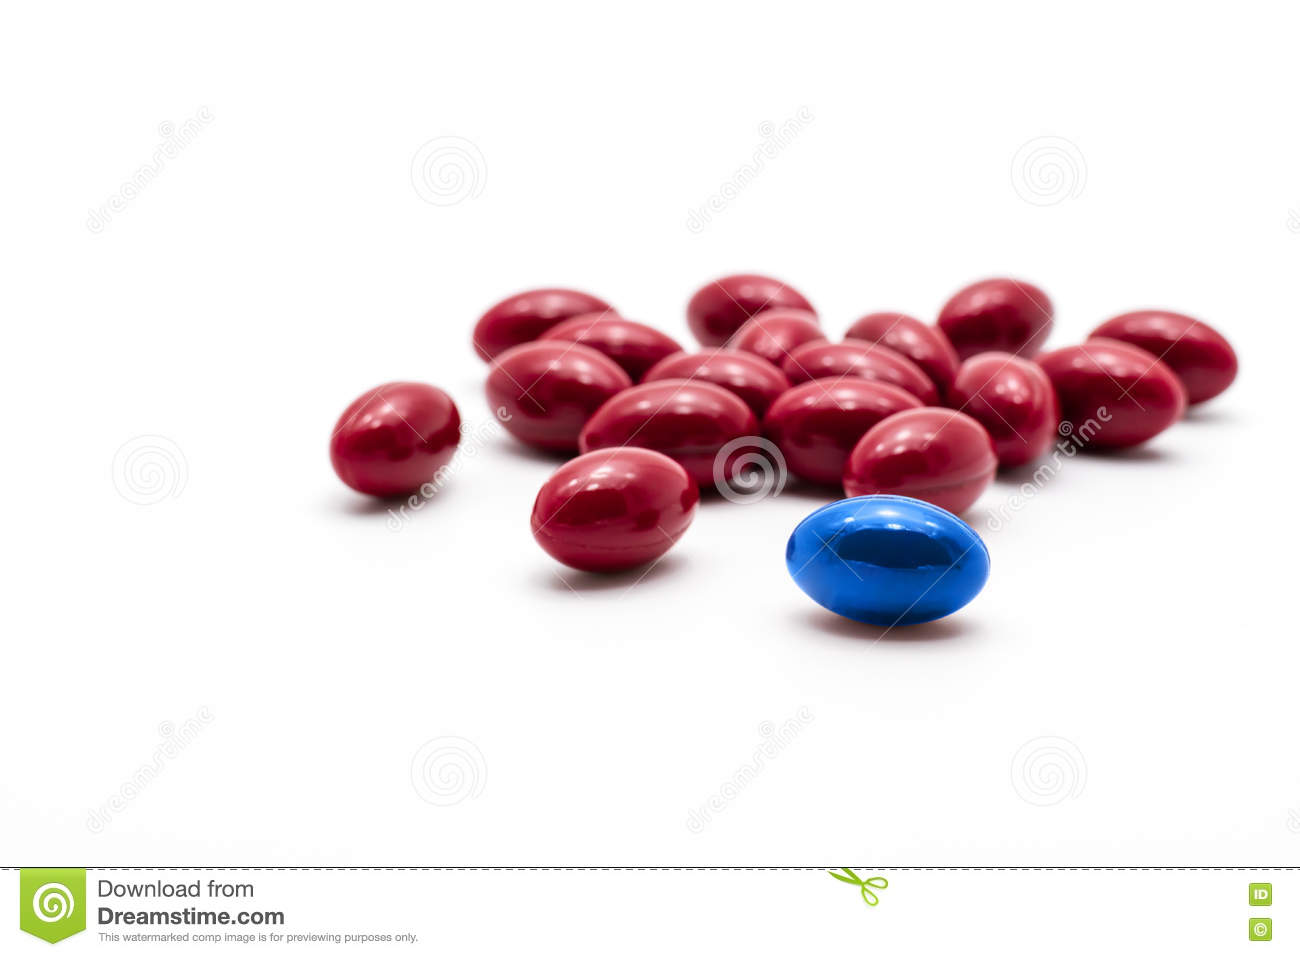 File:Vitaminepillen-op-witte-achtergrond-kies-rode-pil-blauwe-pil-74162850.jpg